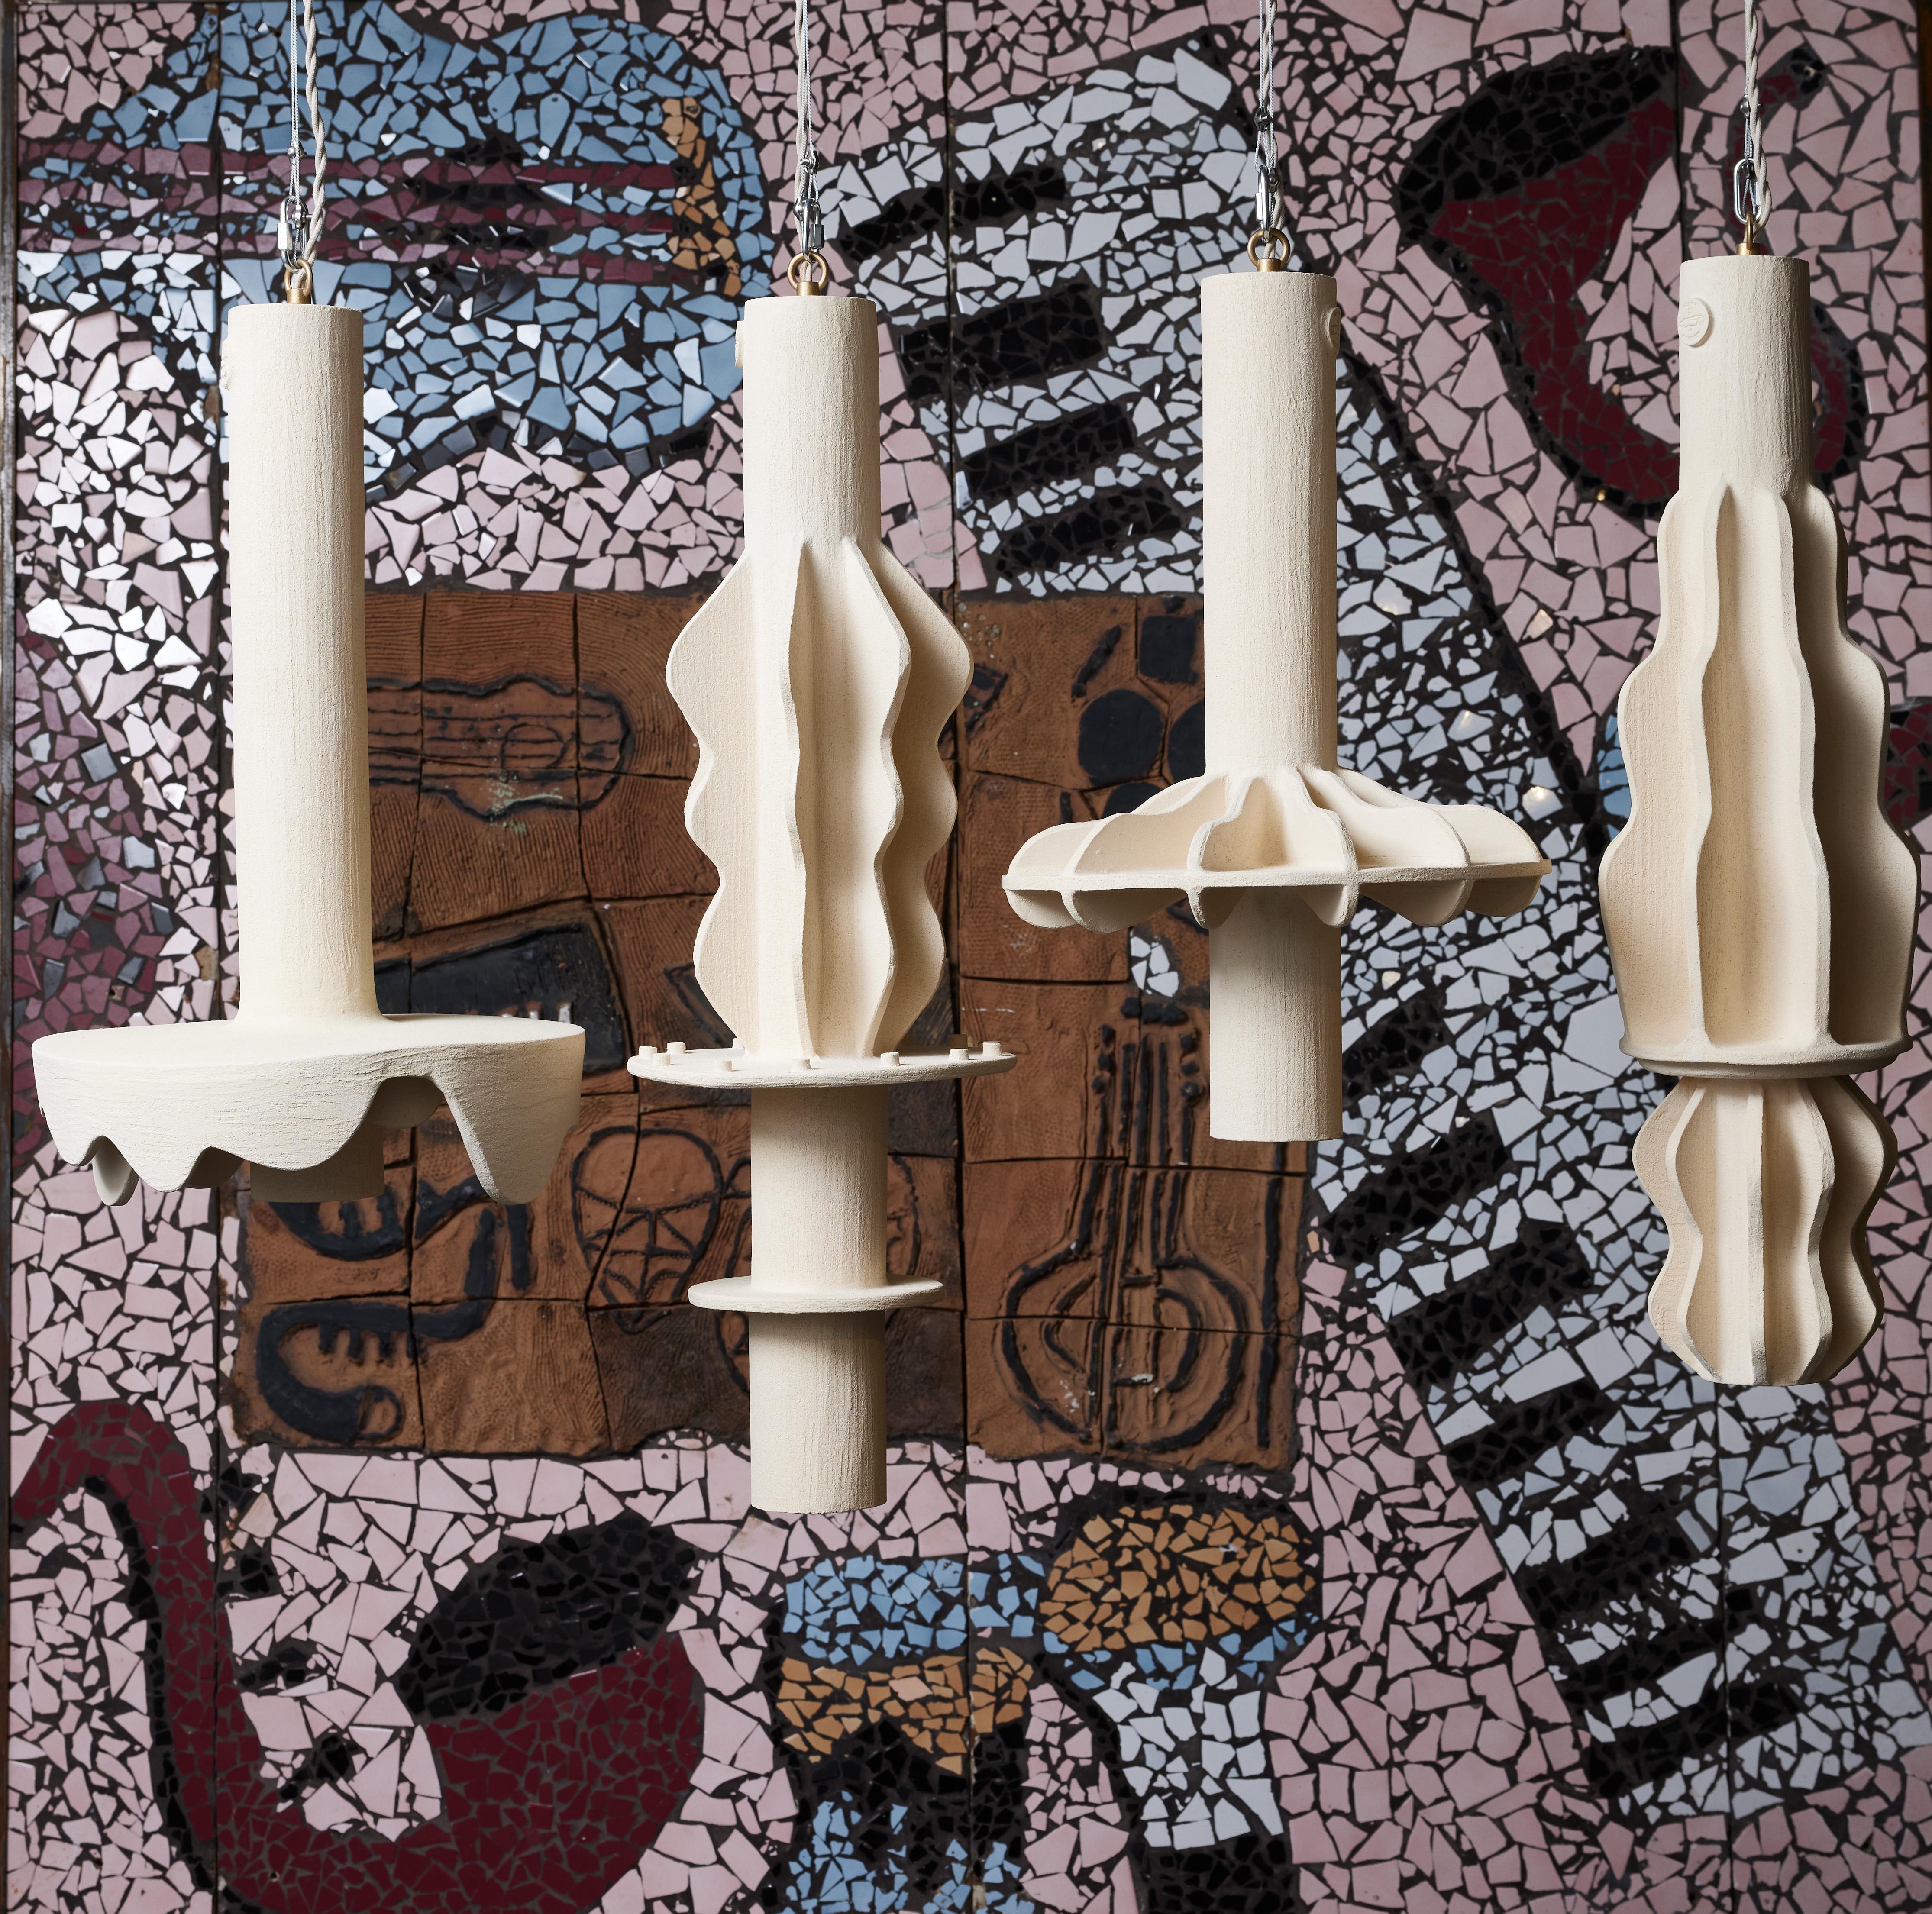 Suspensions uniques conçues et réalisées par la céramiste contemporaine française Olivia Cognet.

Chaque suspension a une forme cylindrique similaire, puis est décorée de plusieurs formes et motifs.

Une source de lumière par appareil.

Depuis